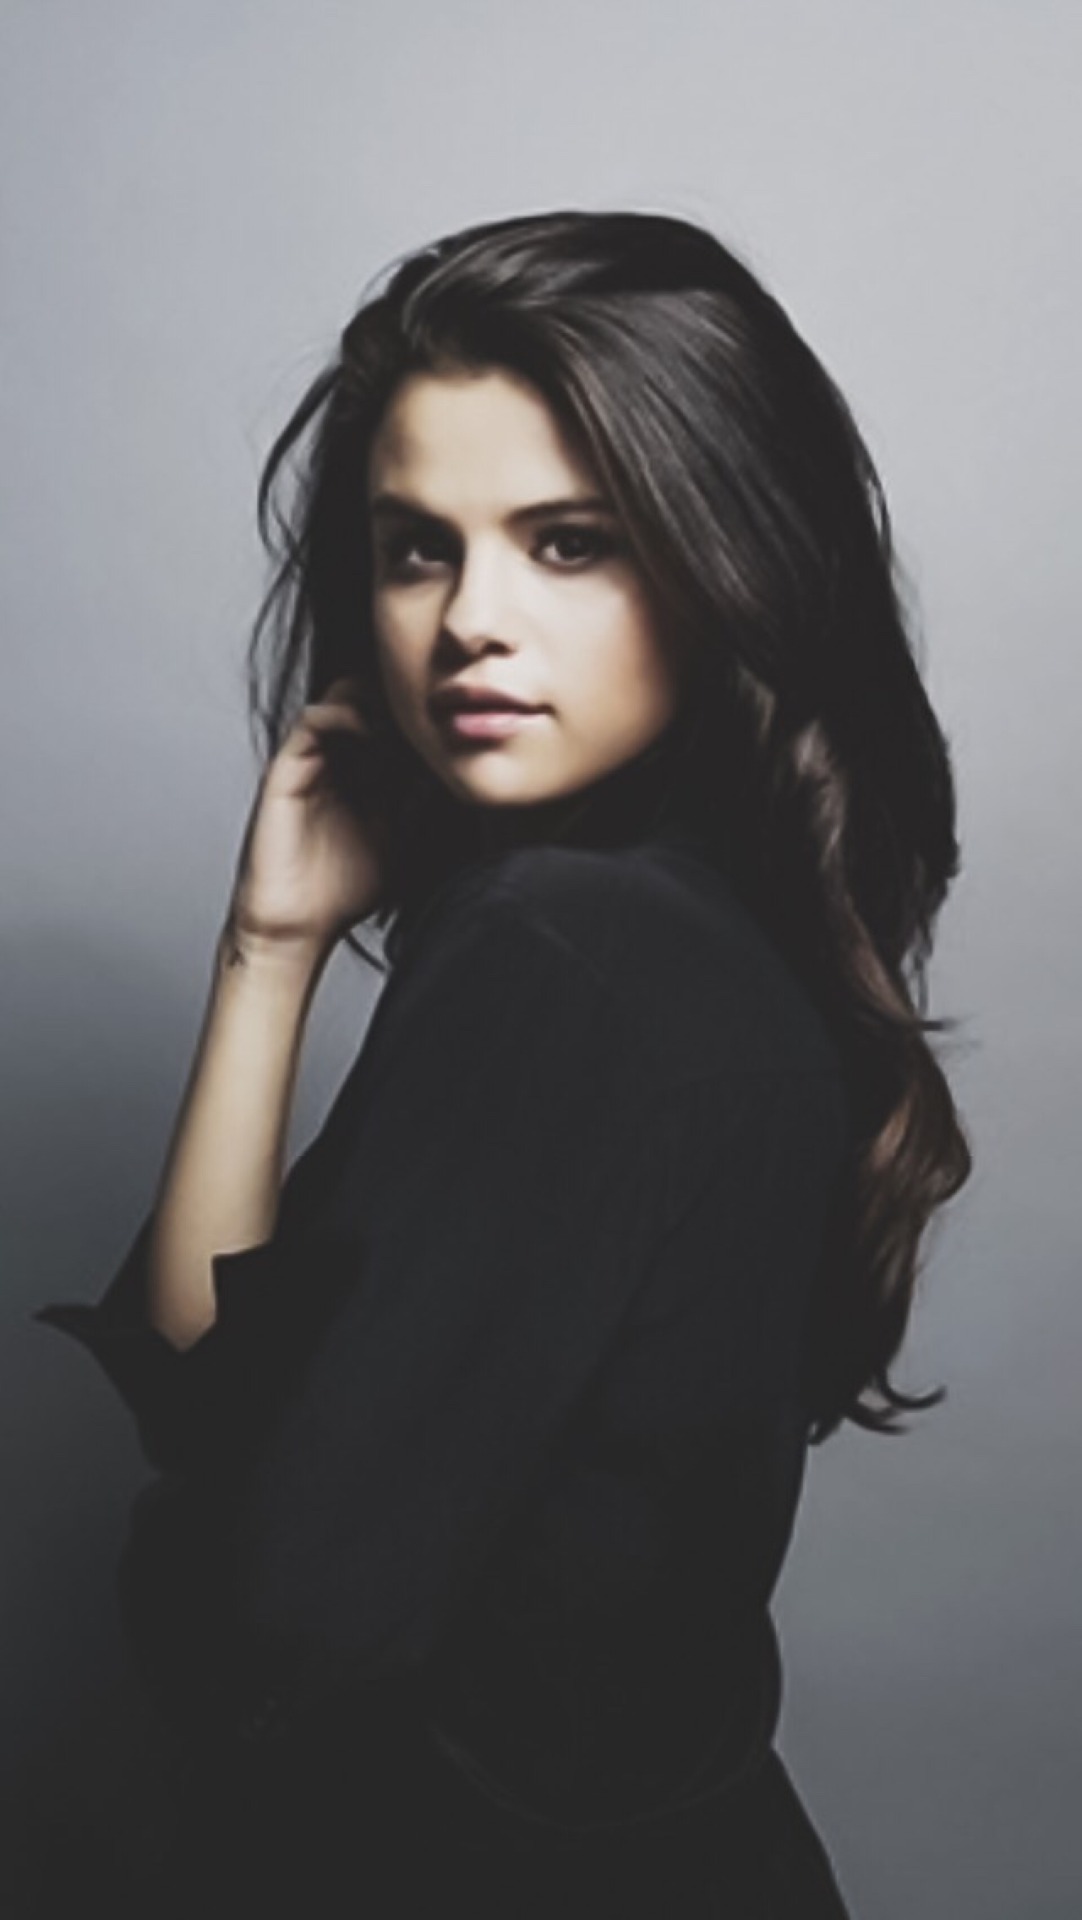 30+] Selena Gomez Tumblr Wallpapers - WallpaperSafari